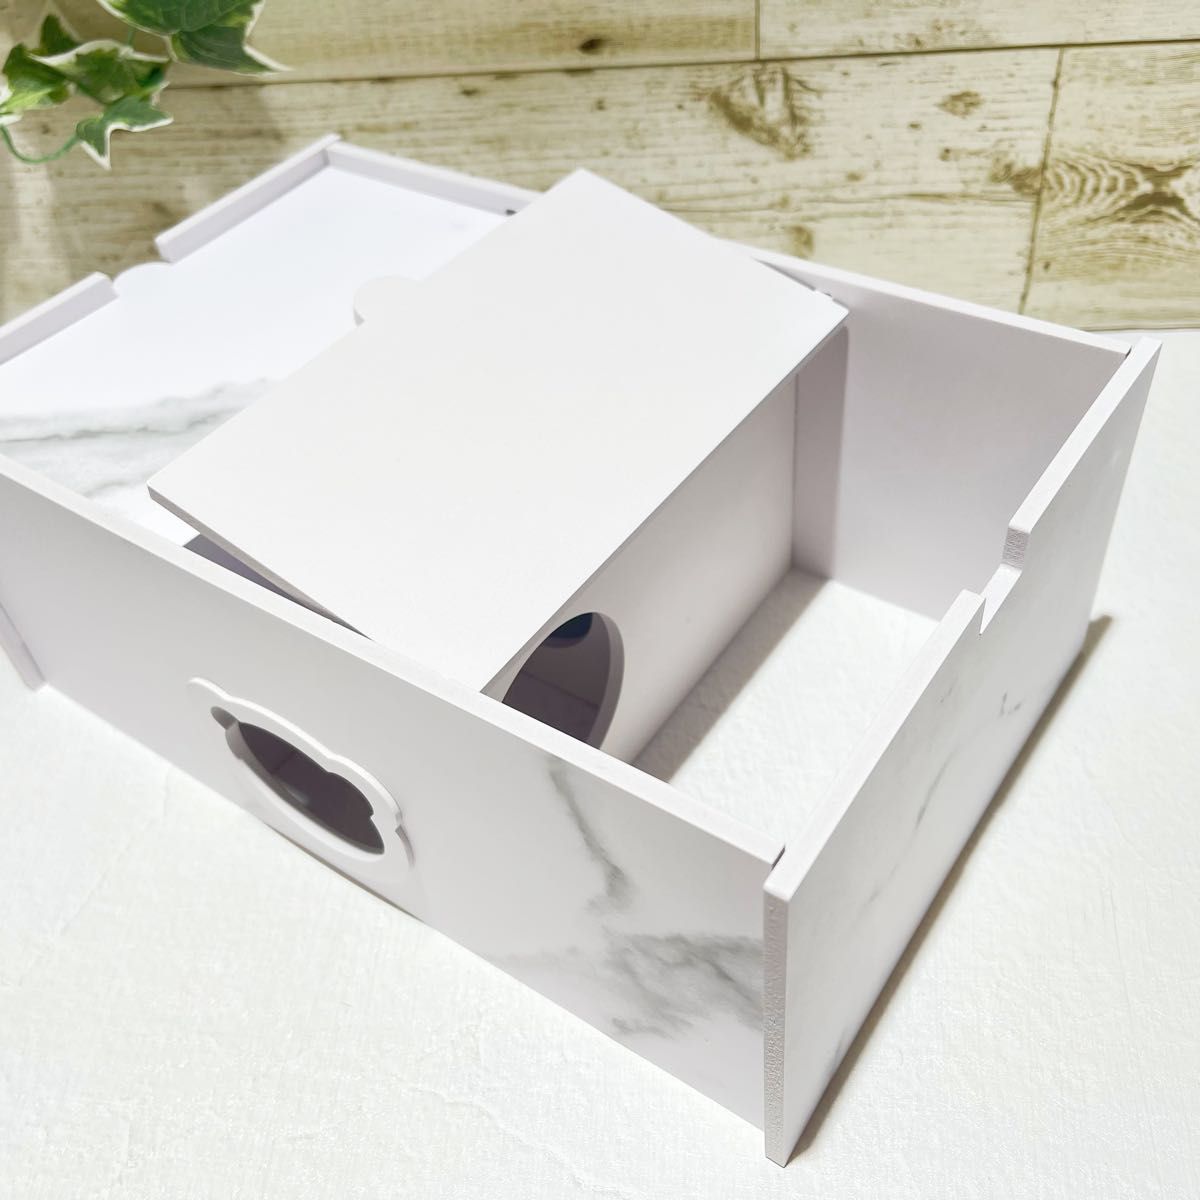 ハムスターペットラットマウス小動物用地下式ハウス家巣箱おうち木箱おもちゃ遊具玩具